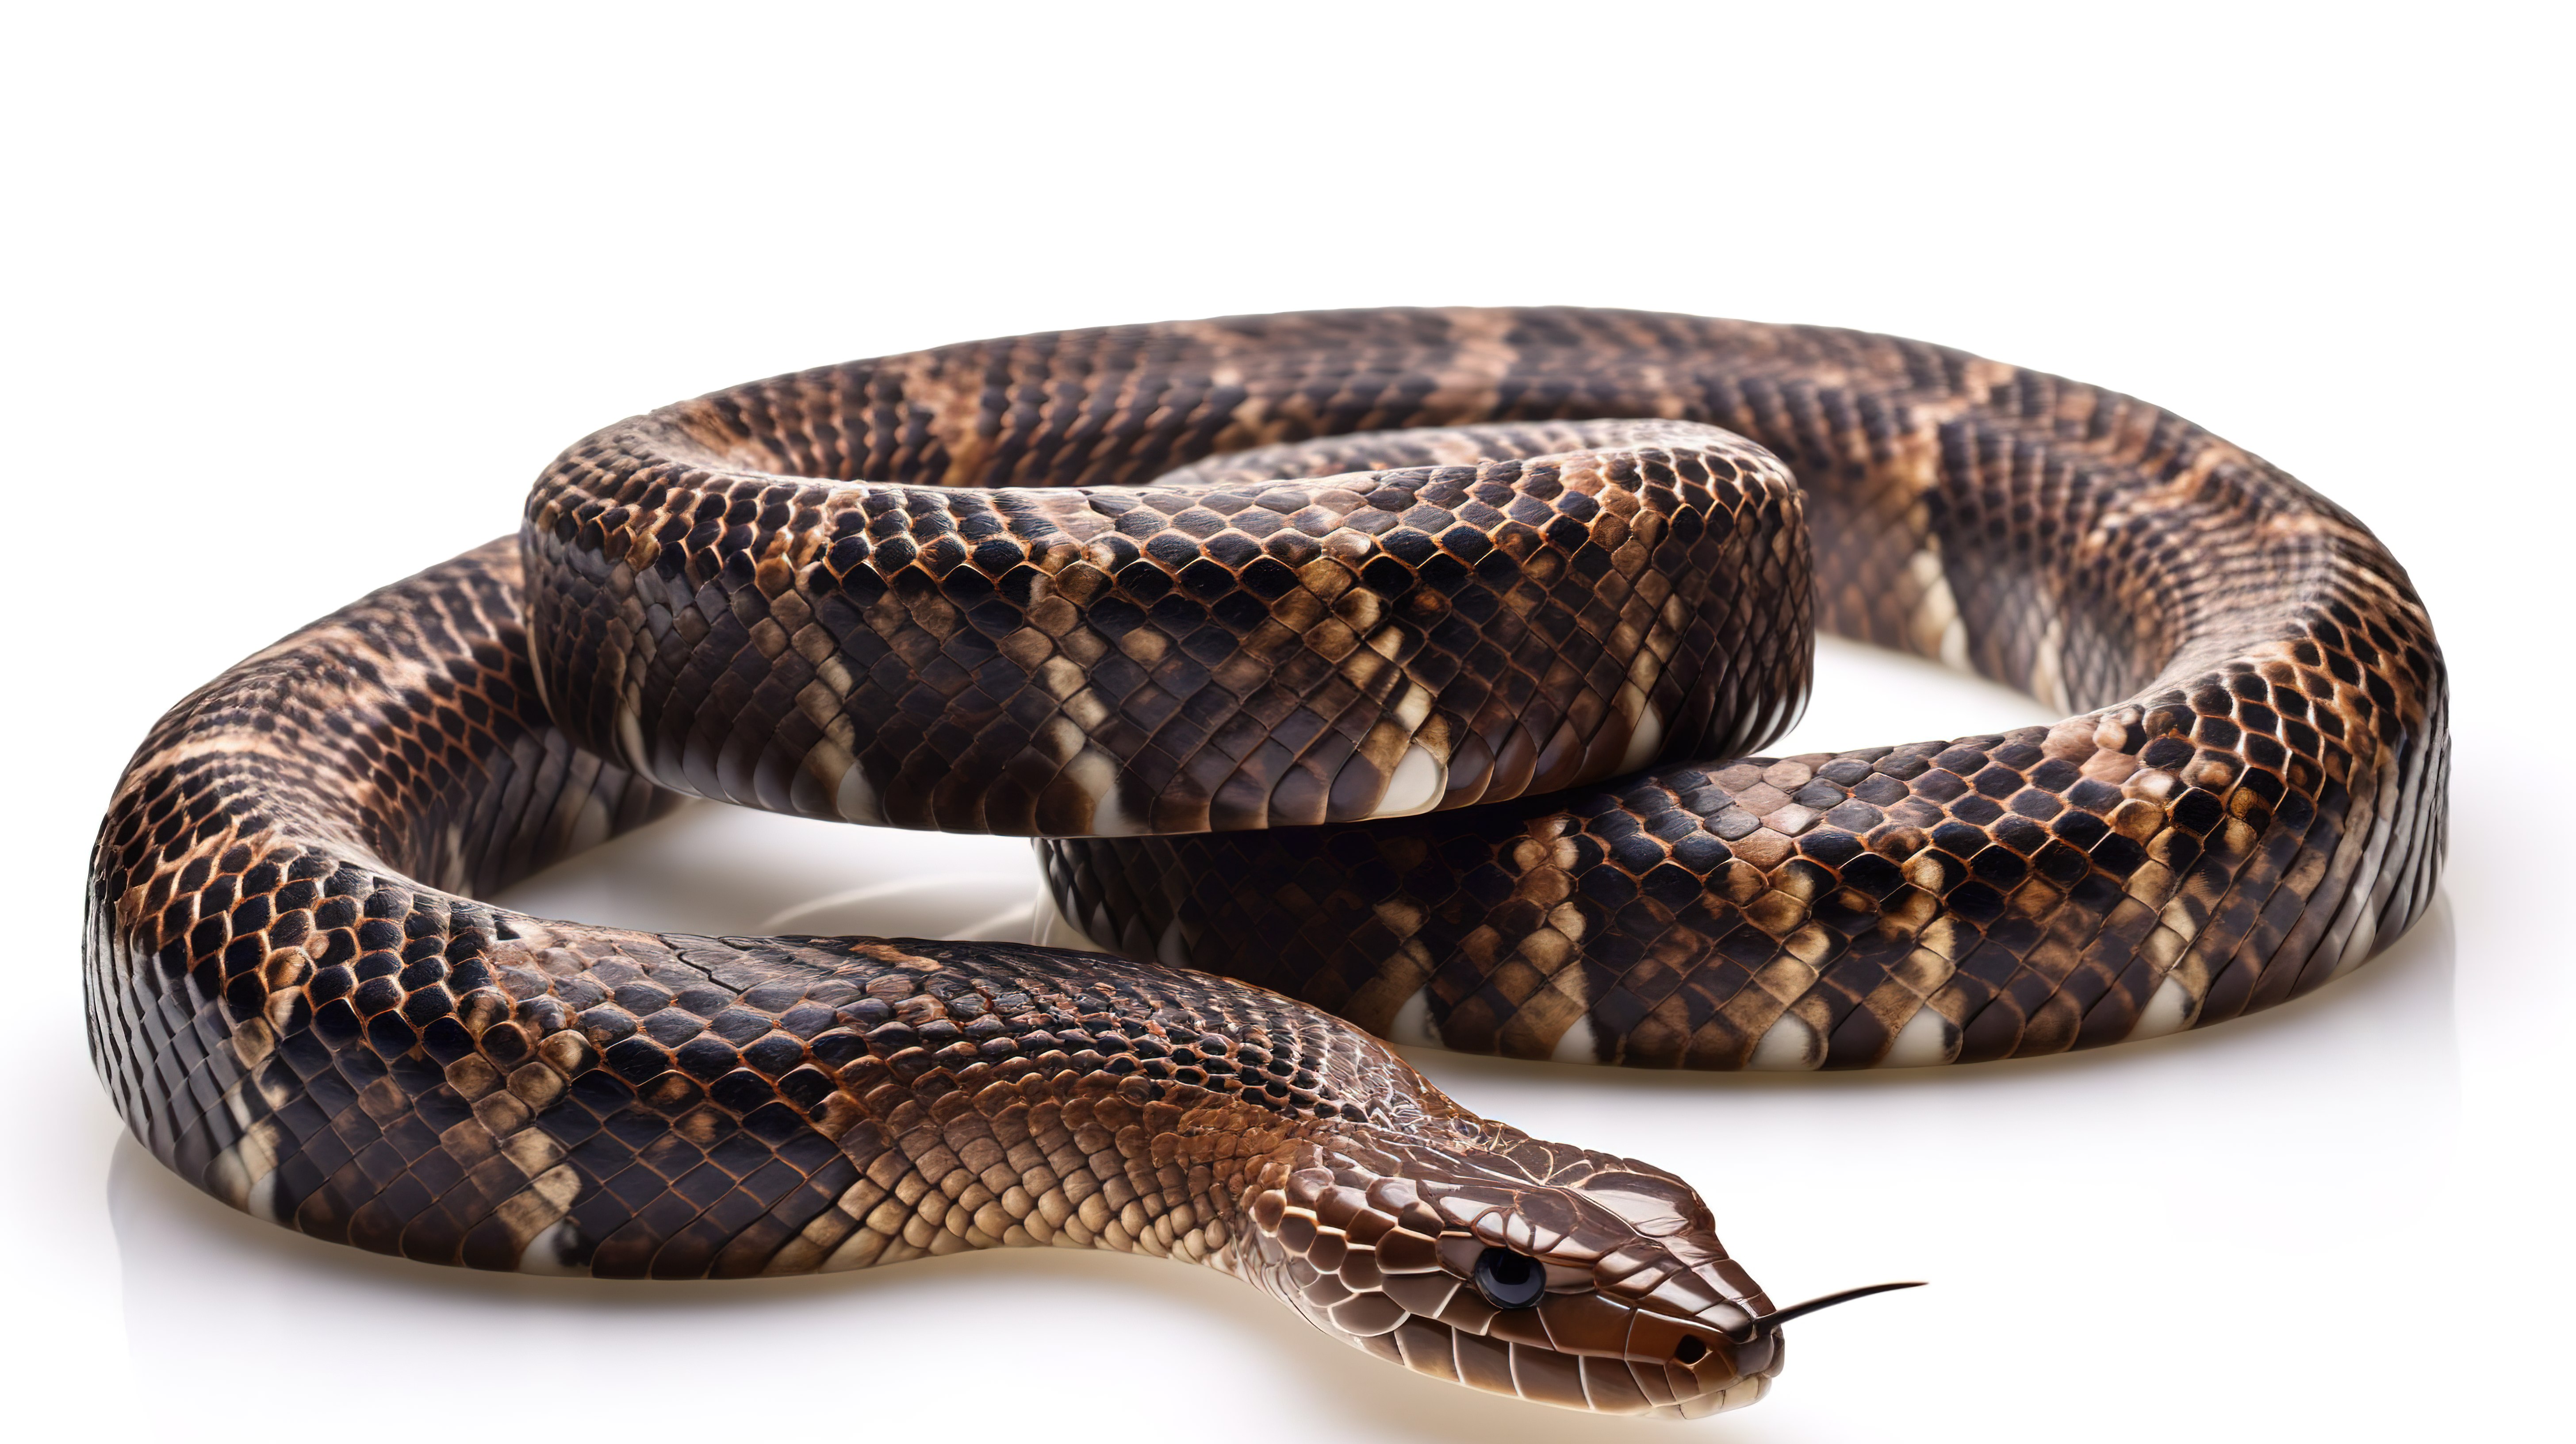 3d 眼镜王蛇中最长的毒蛇单独站立在白色背景上图片